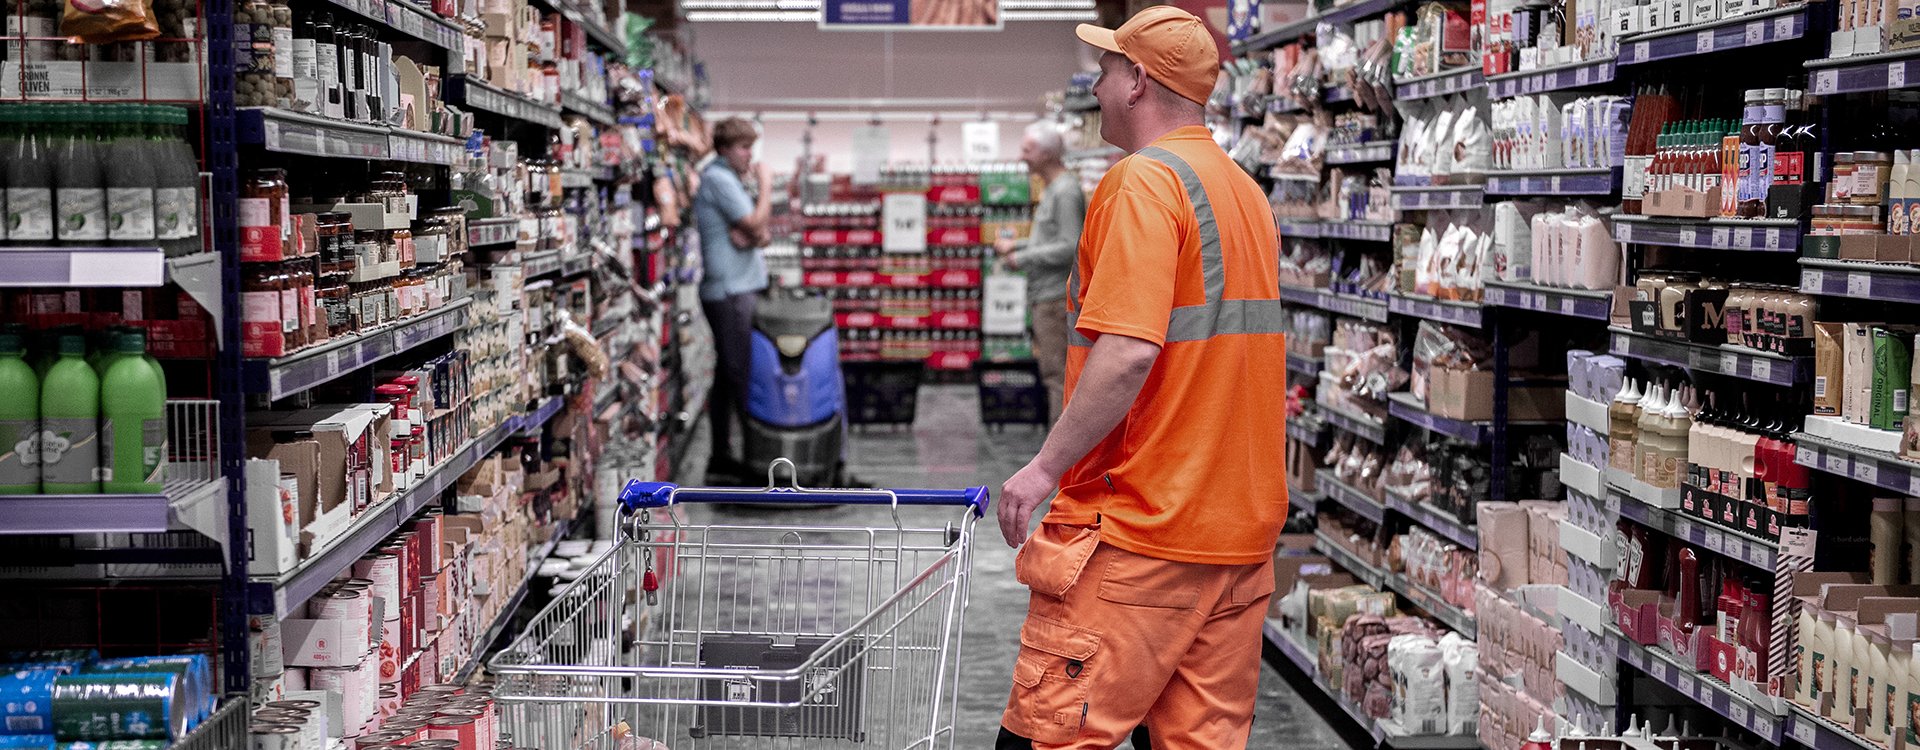 Mand i orange arbejdstøj med indkøbsvogn i supermarked